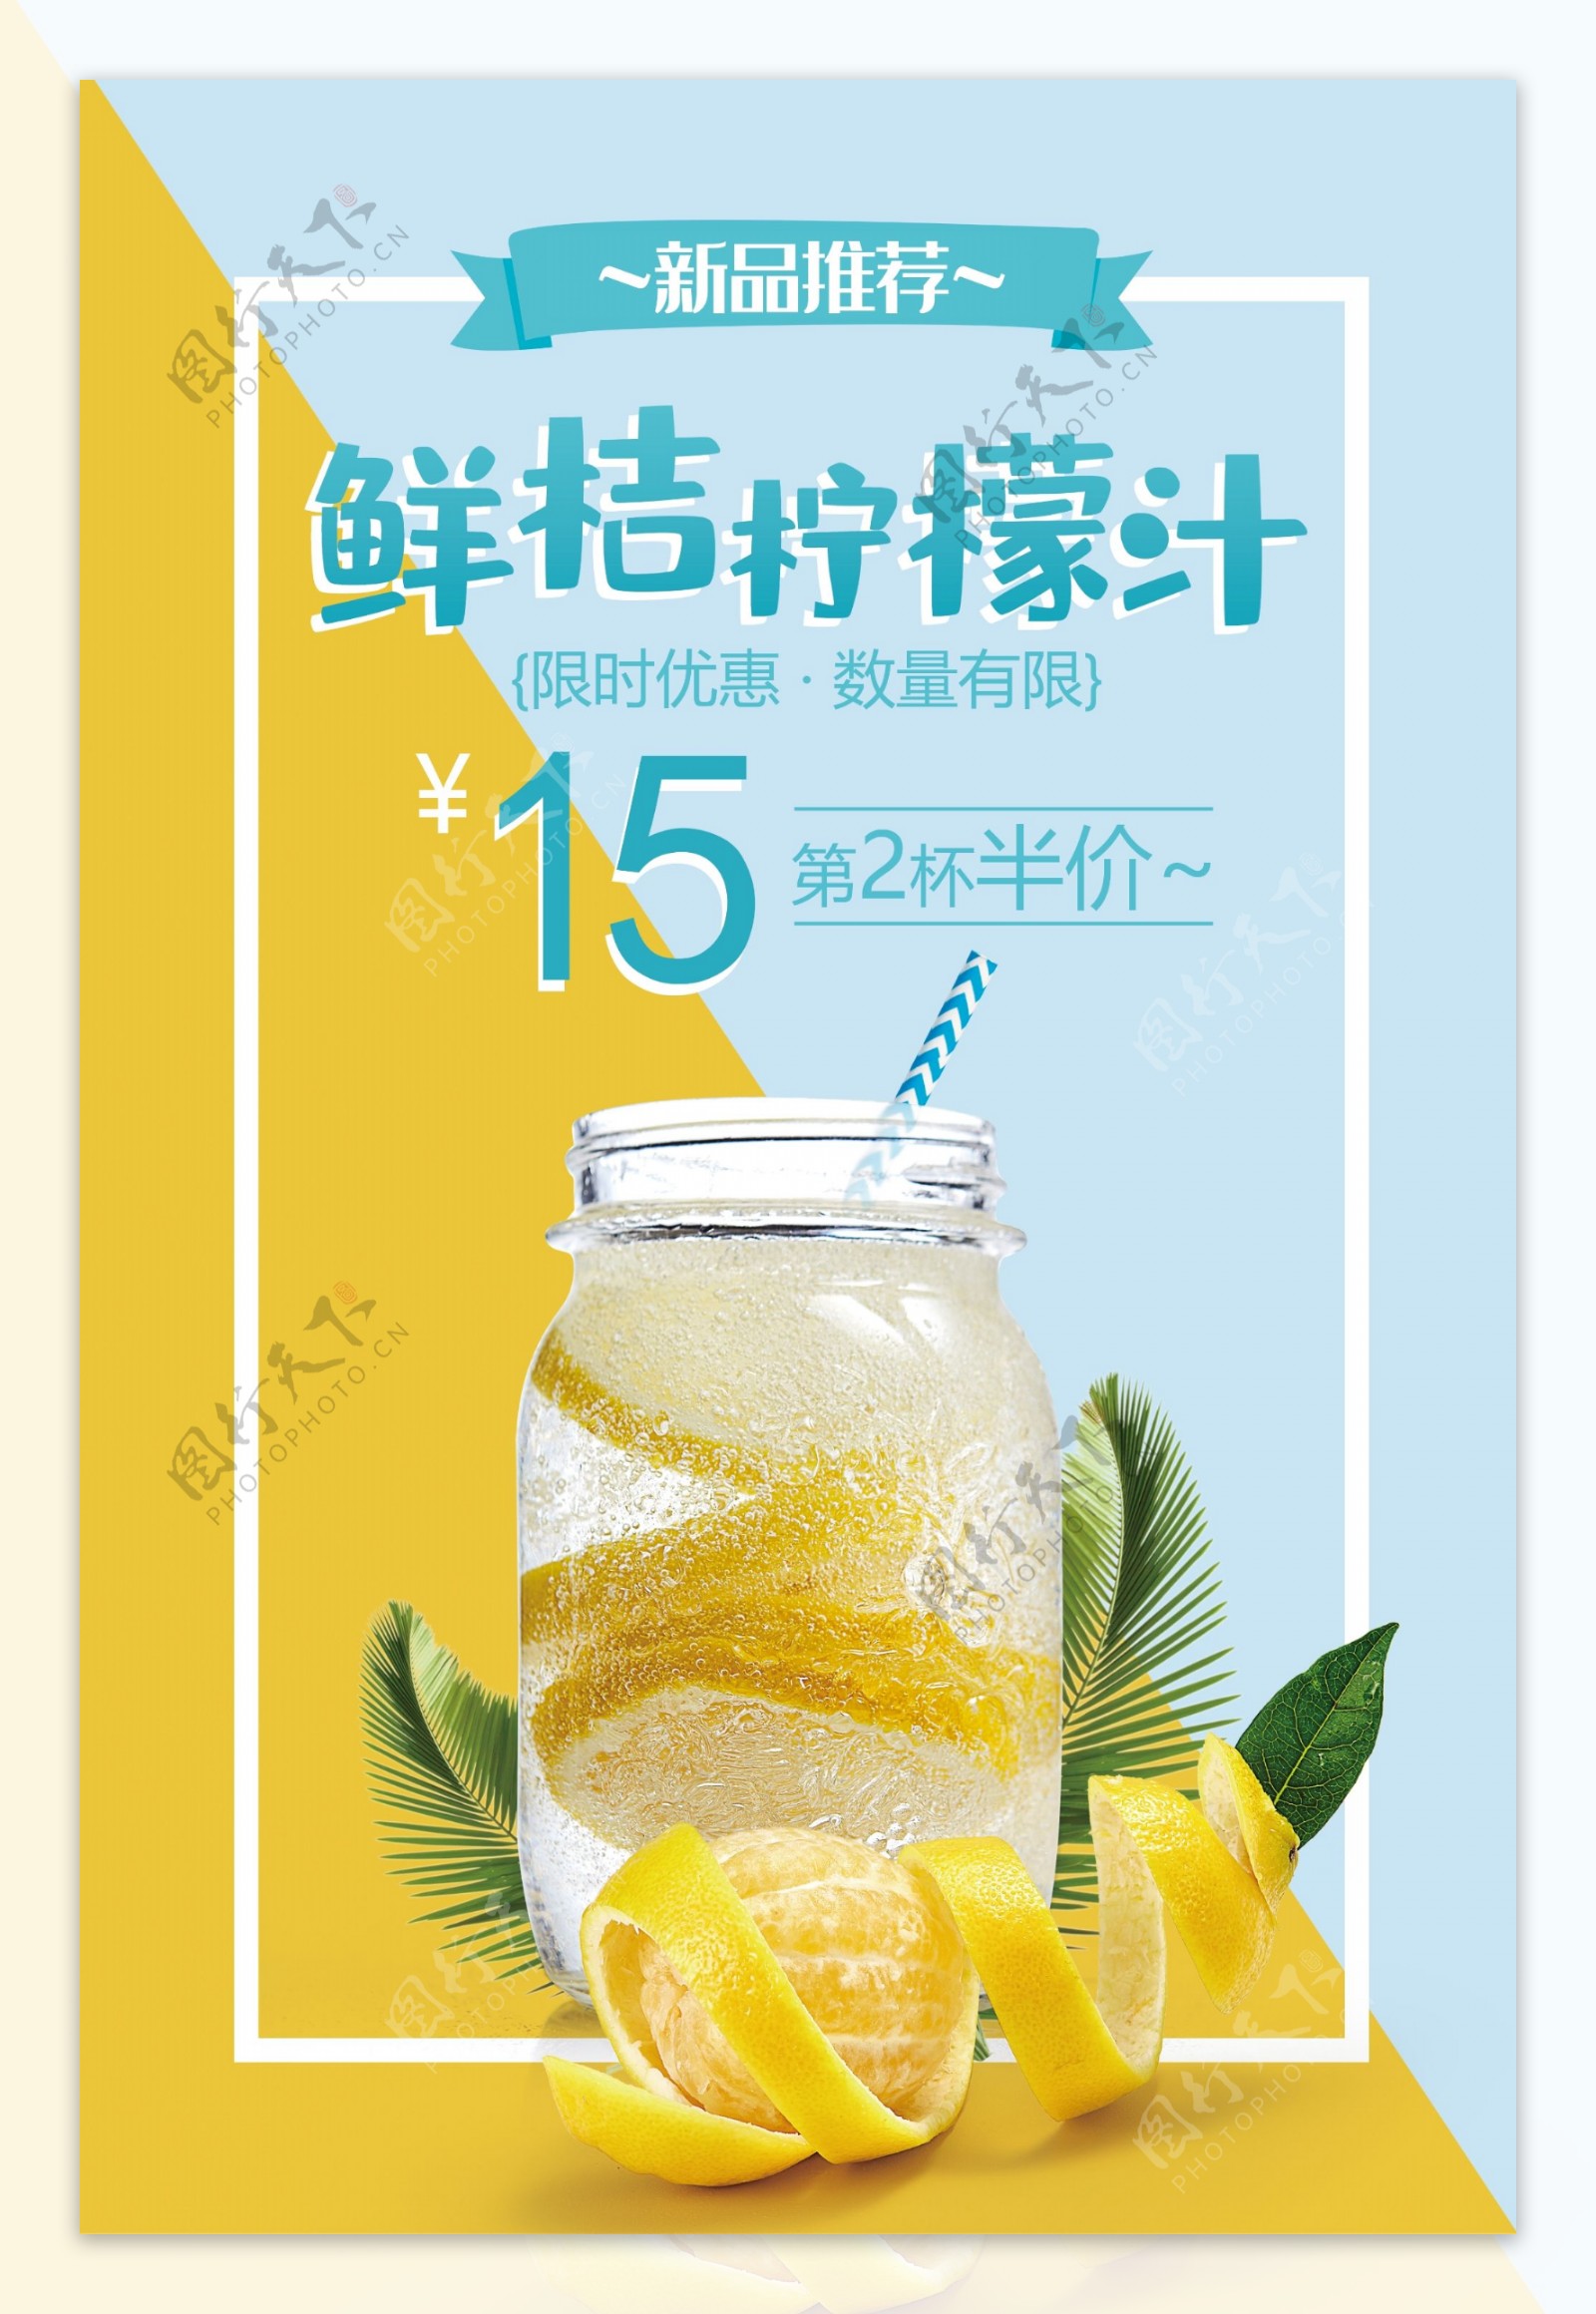 清爽鲜桔柠檬汁促销海报